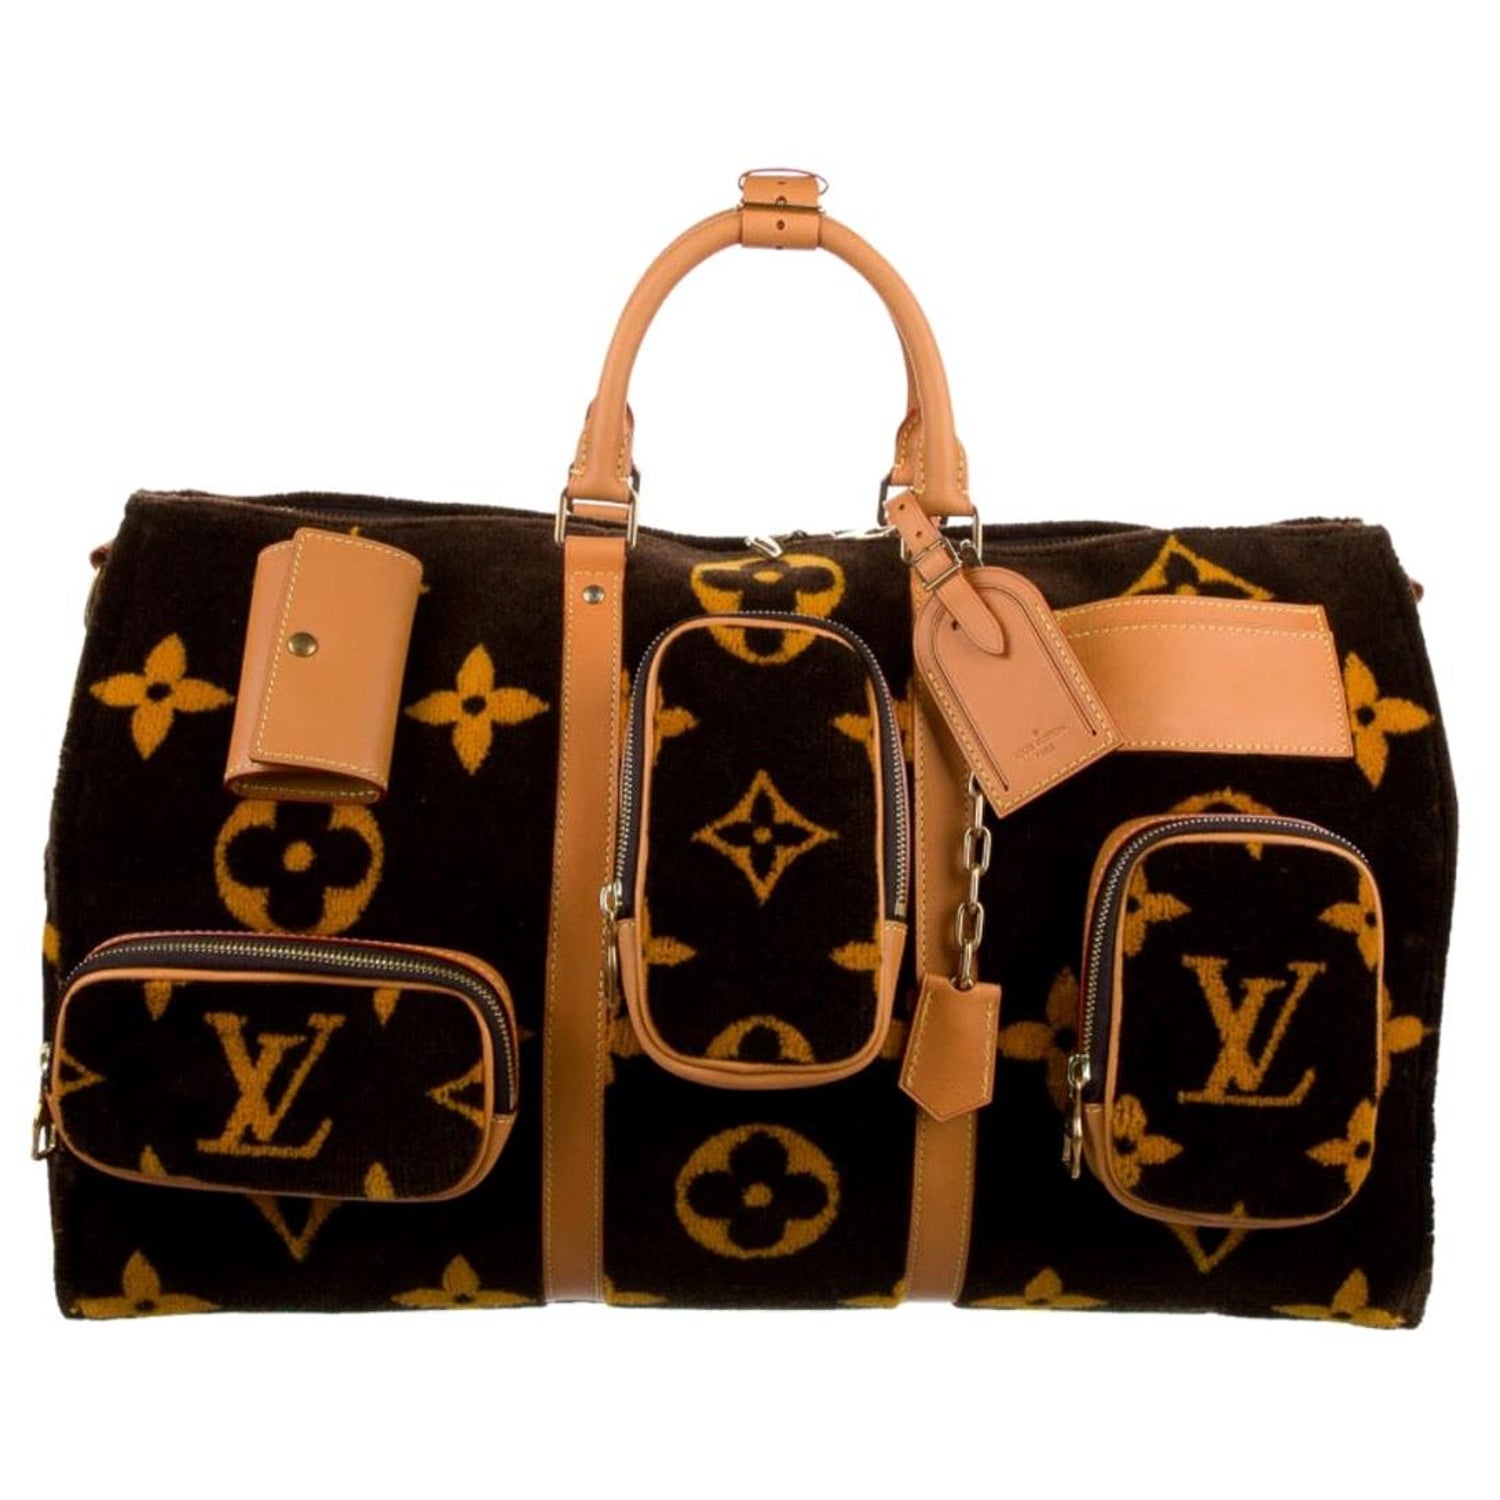 Louis Vuitton Medium Duffle Bags for Men for sale